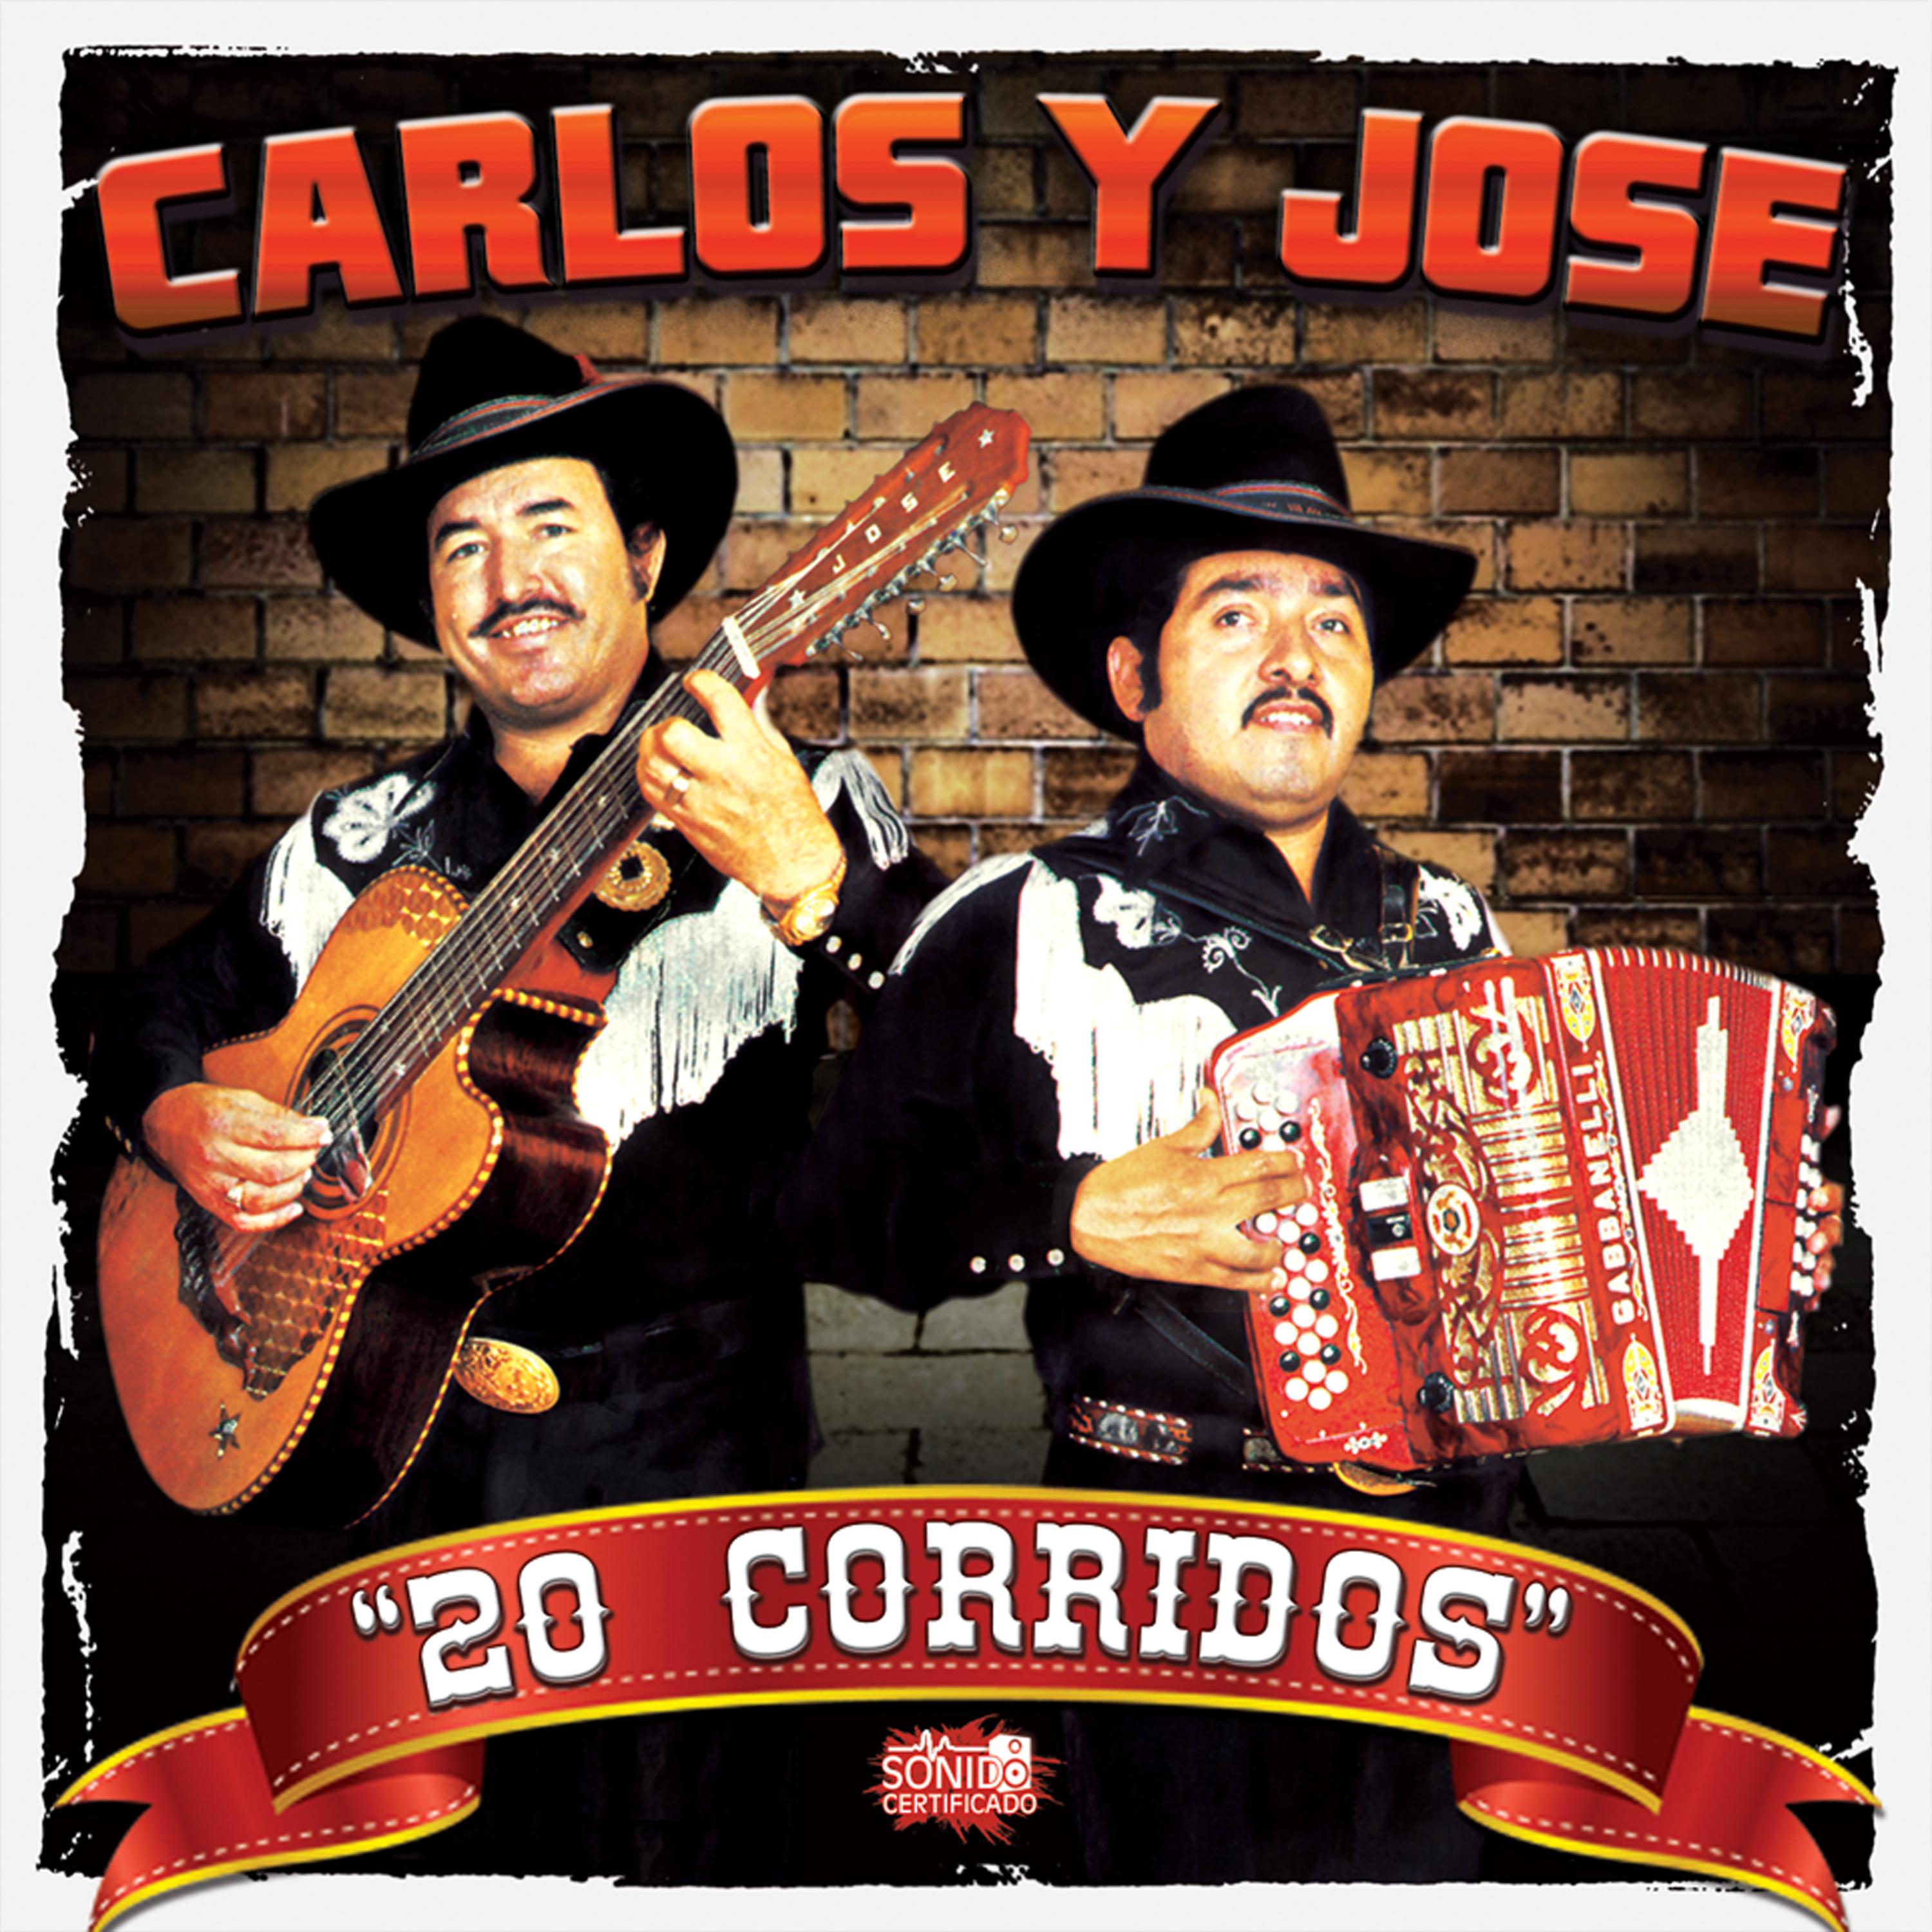 Carlos y jose corridos mix